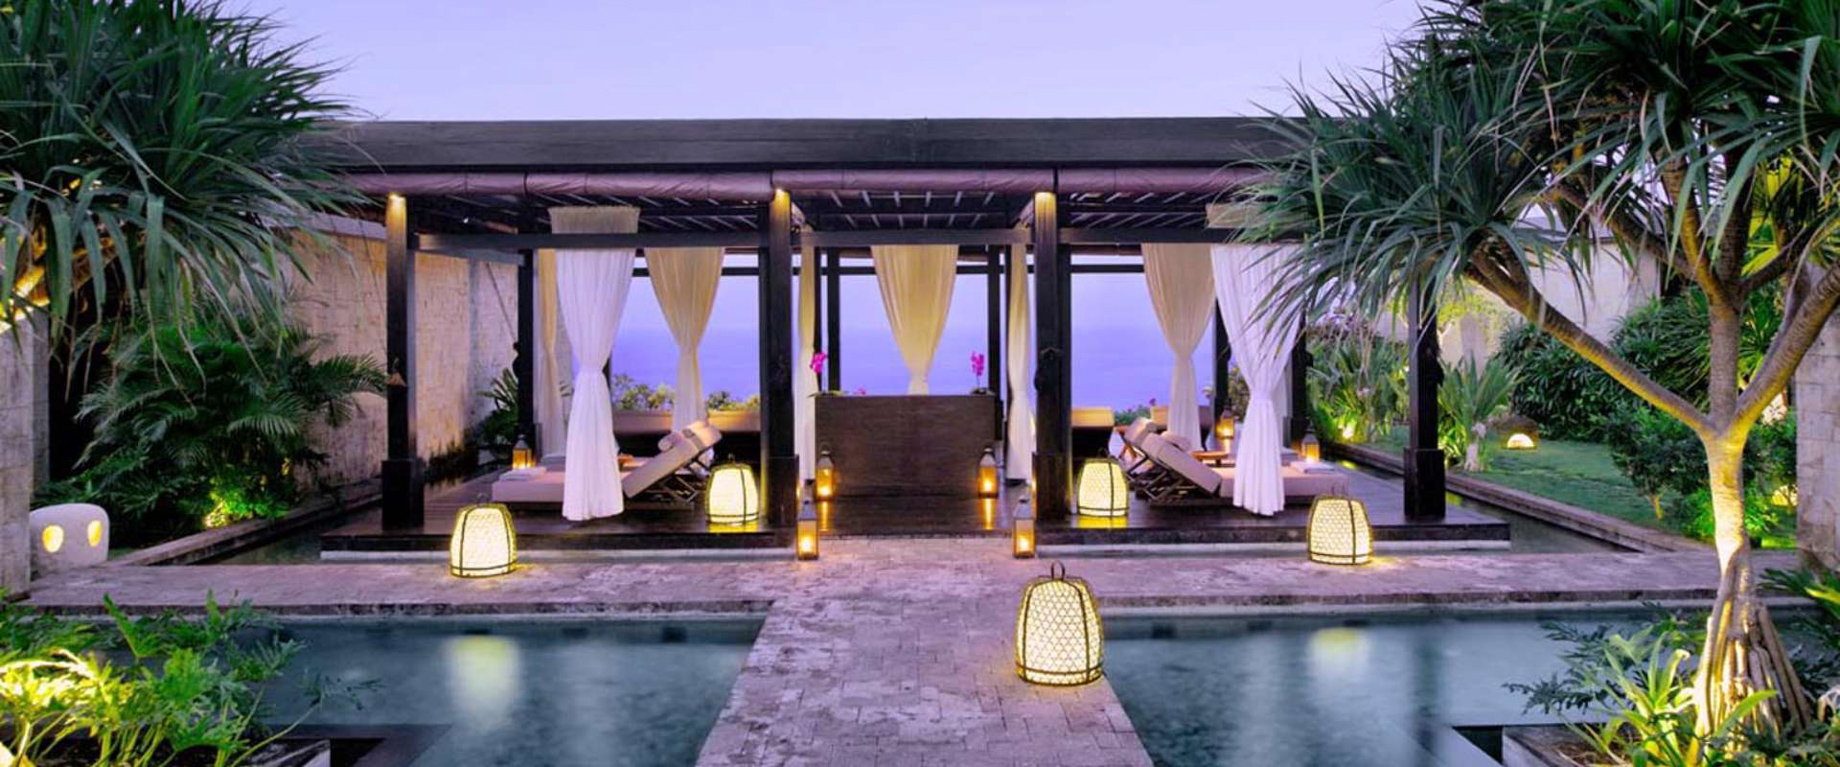 Bvlgari Resort Bali – Uluwatu, Bali, Indonesia – The Bvlgari Spa Ocean View Relaxation Lounge Sunset